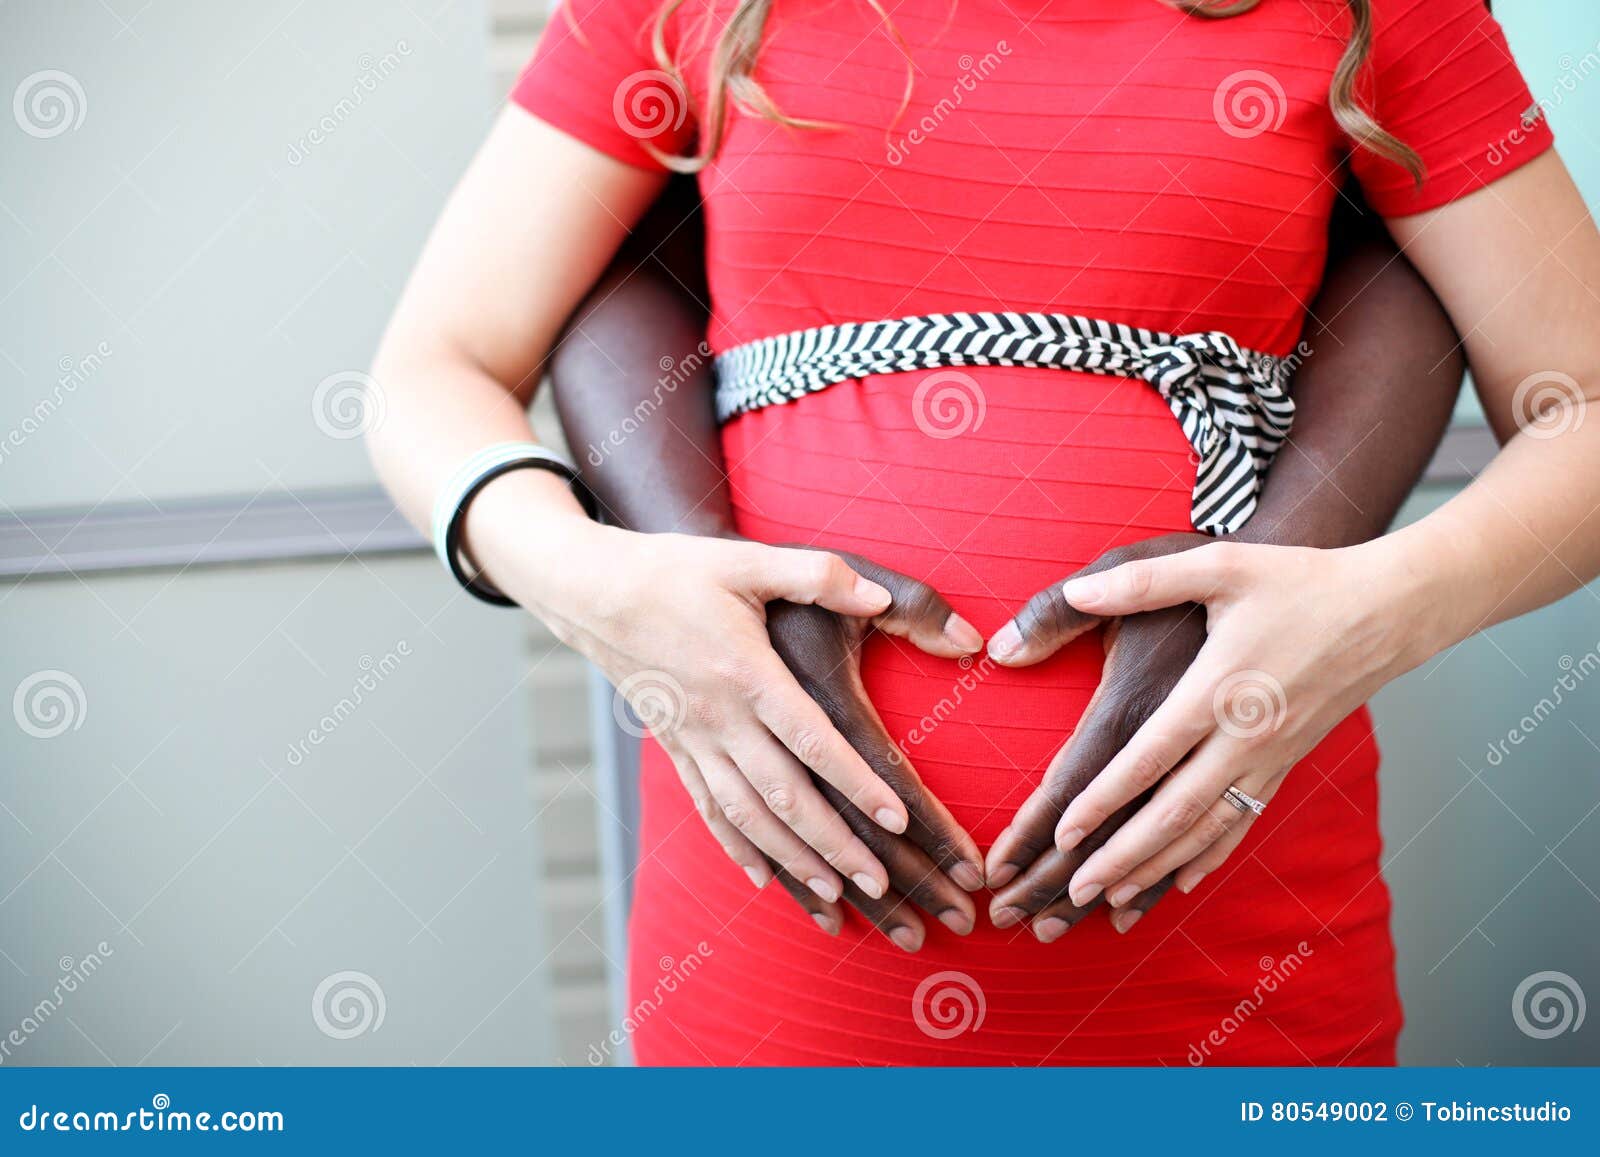 915 Interracial Pregnant Couple Stock Photos